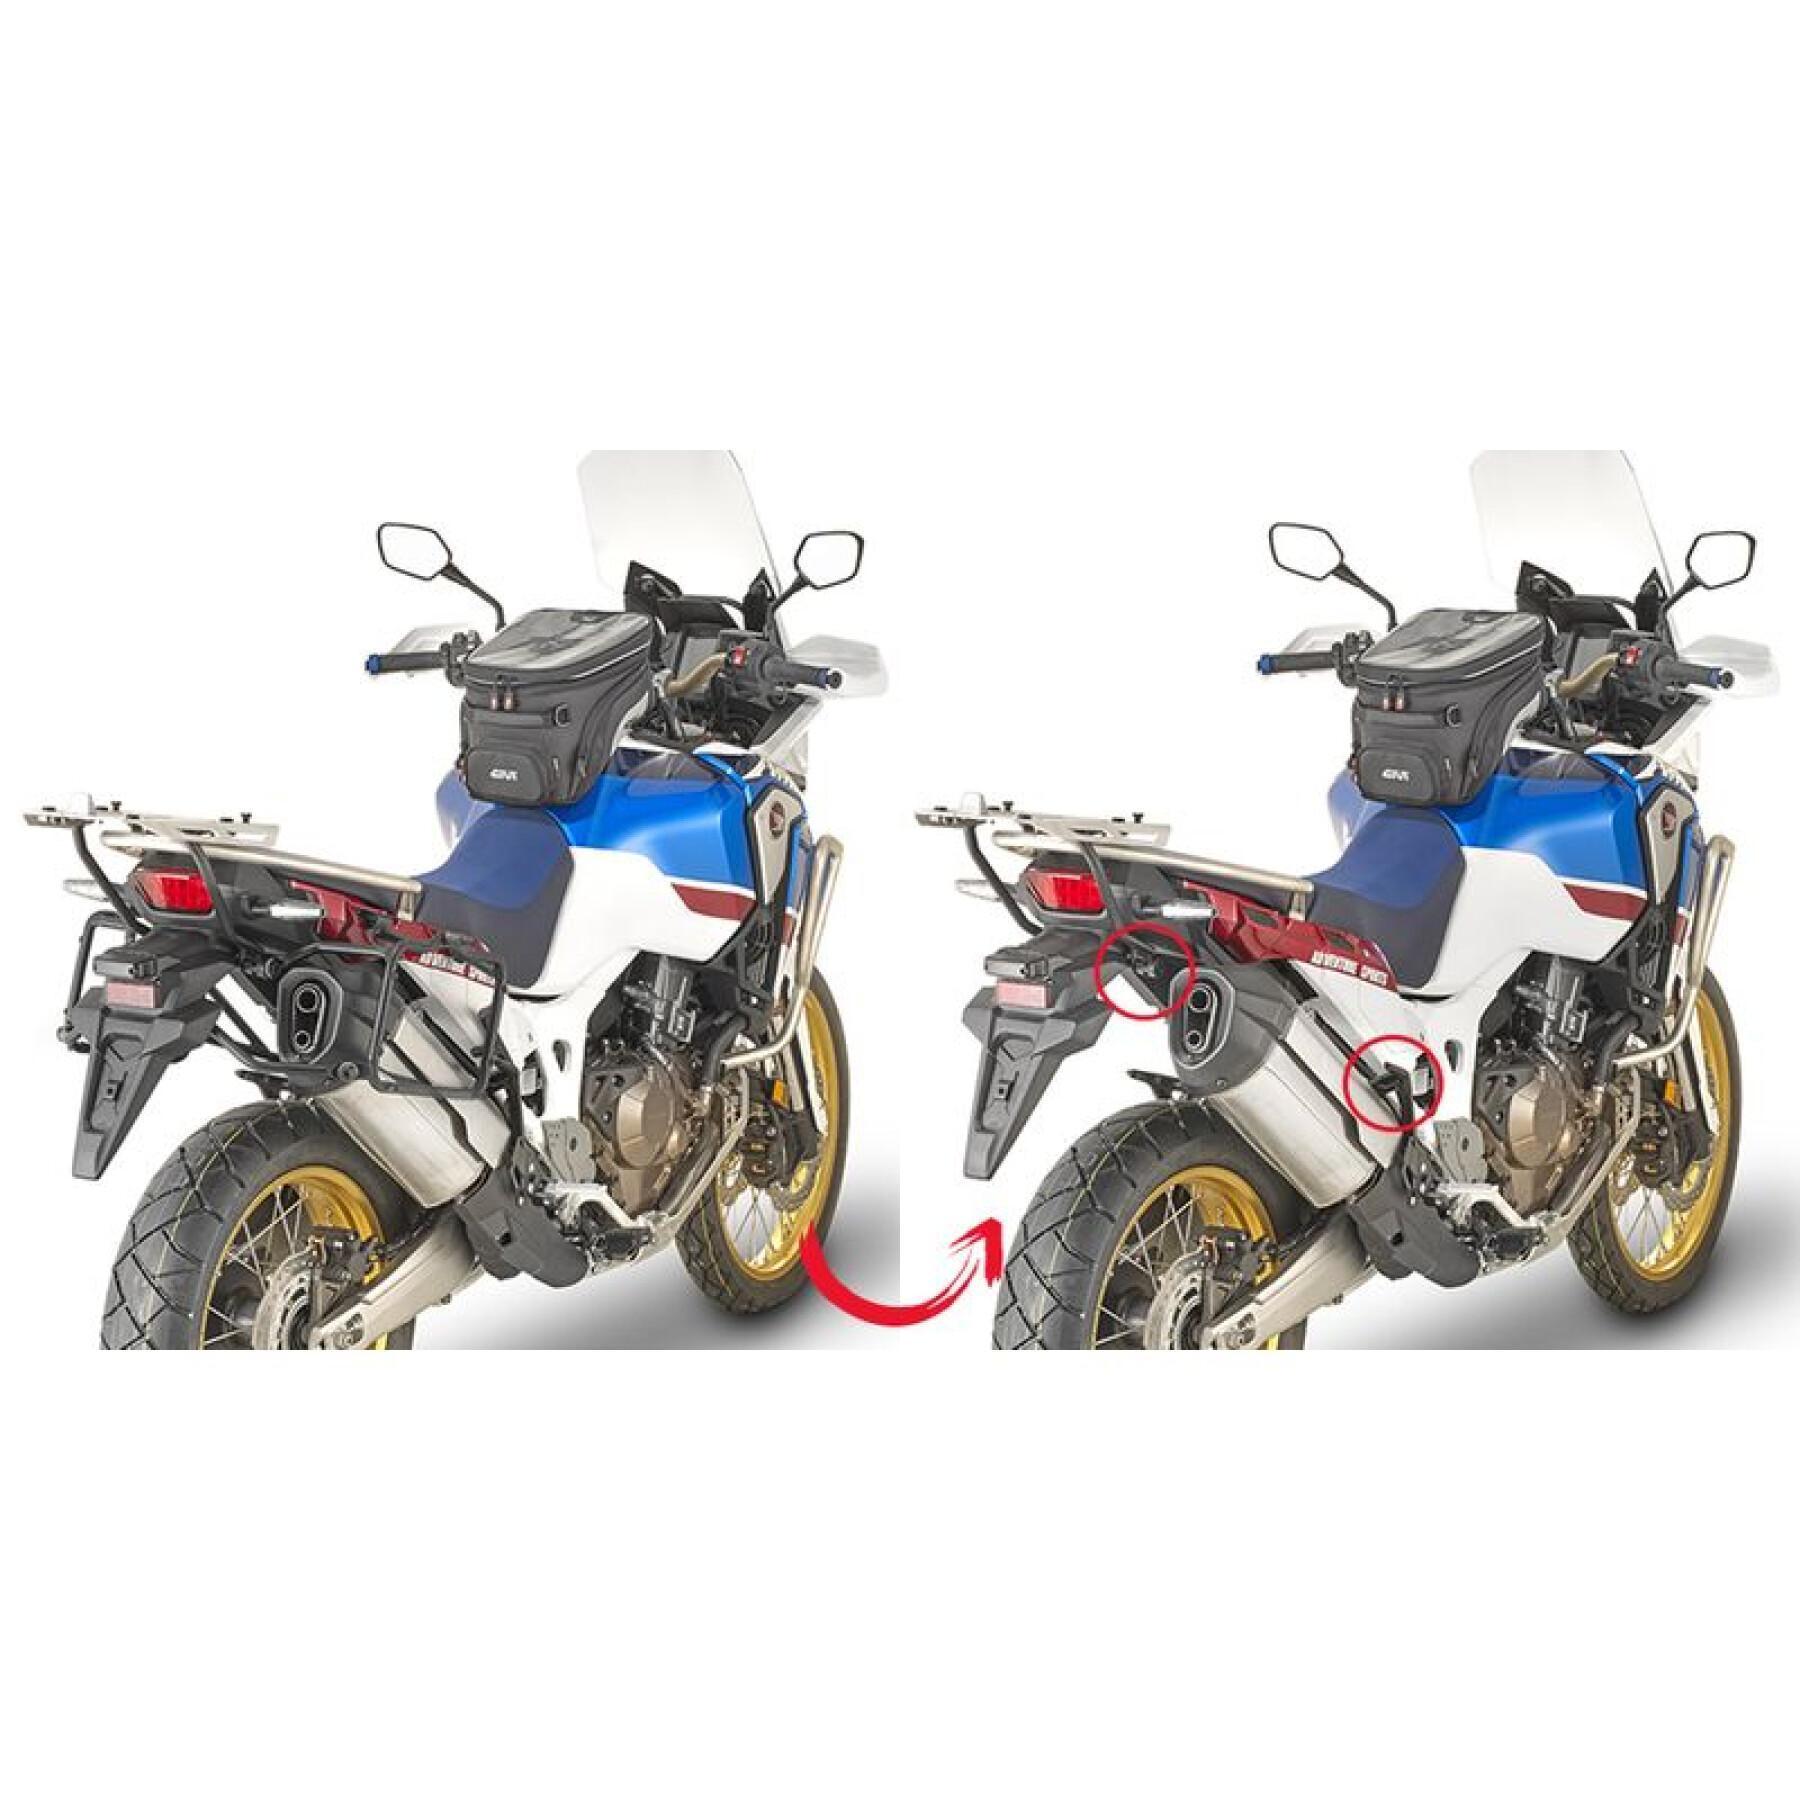 Snelle motorfiets zijspanhouder Givi Monokey Honda Crfd 1000L Africa Twin (18 À 19)